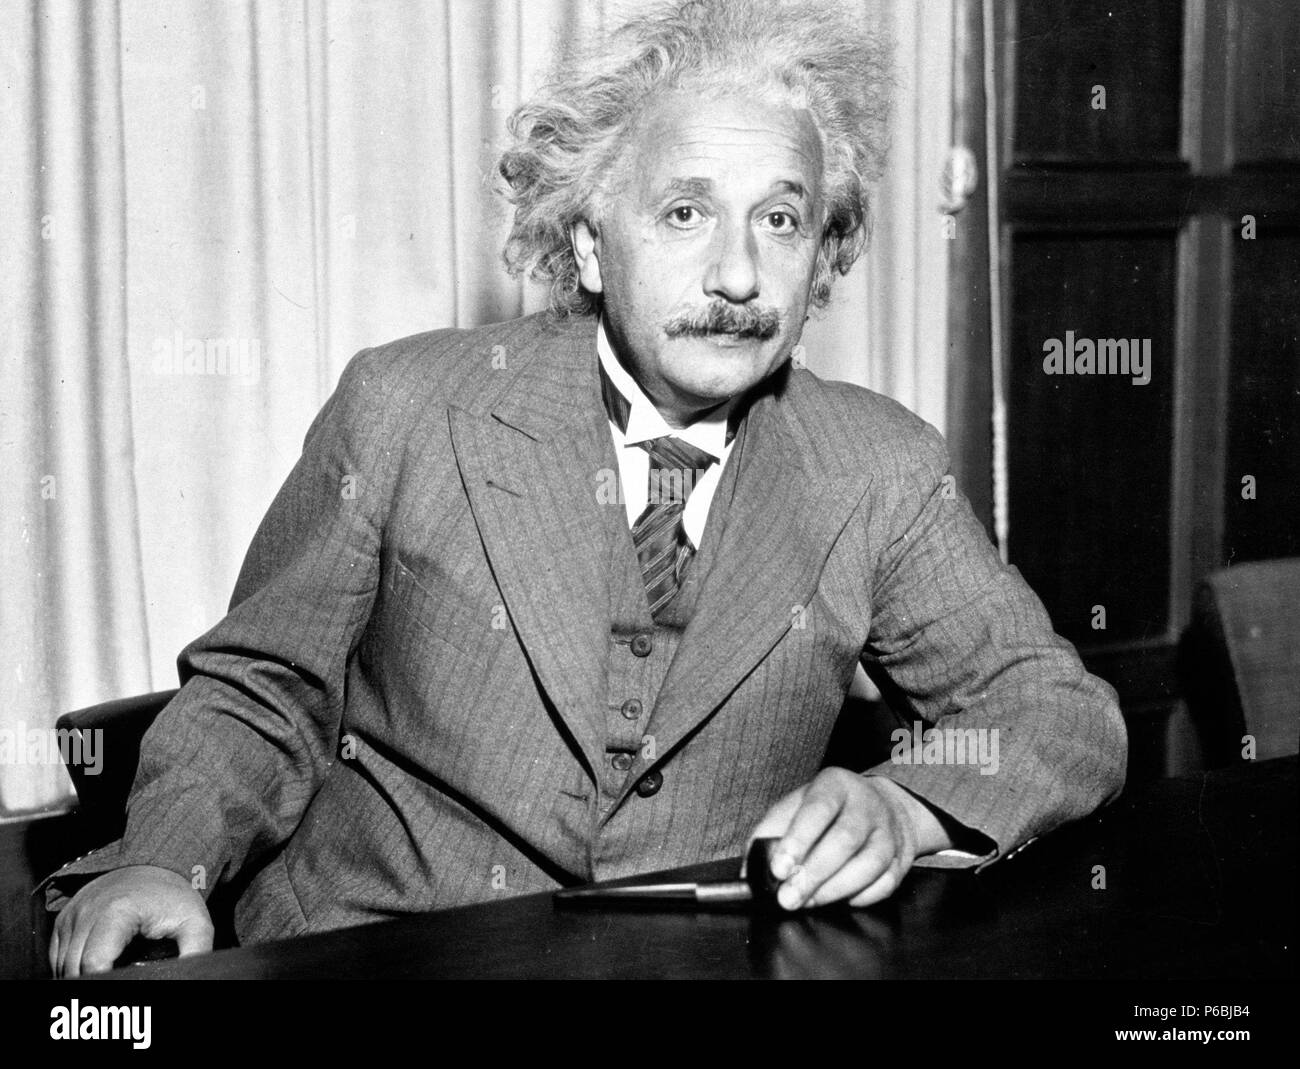 Albert Einstein (1879-1955), deutsch-bron theoretischen Physiker, der die allgemeine Relativitätstheorie entwickelt. Stockfoto